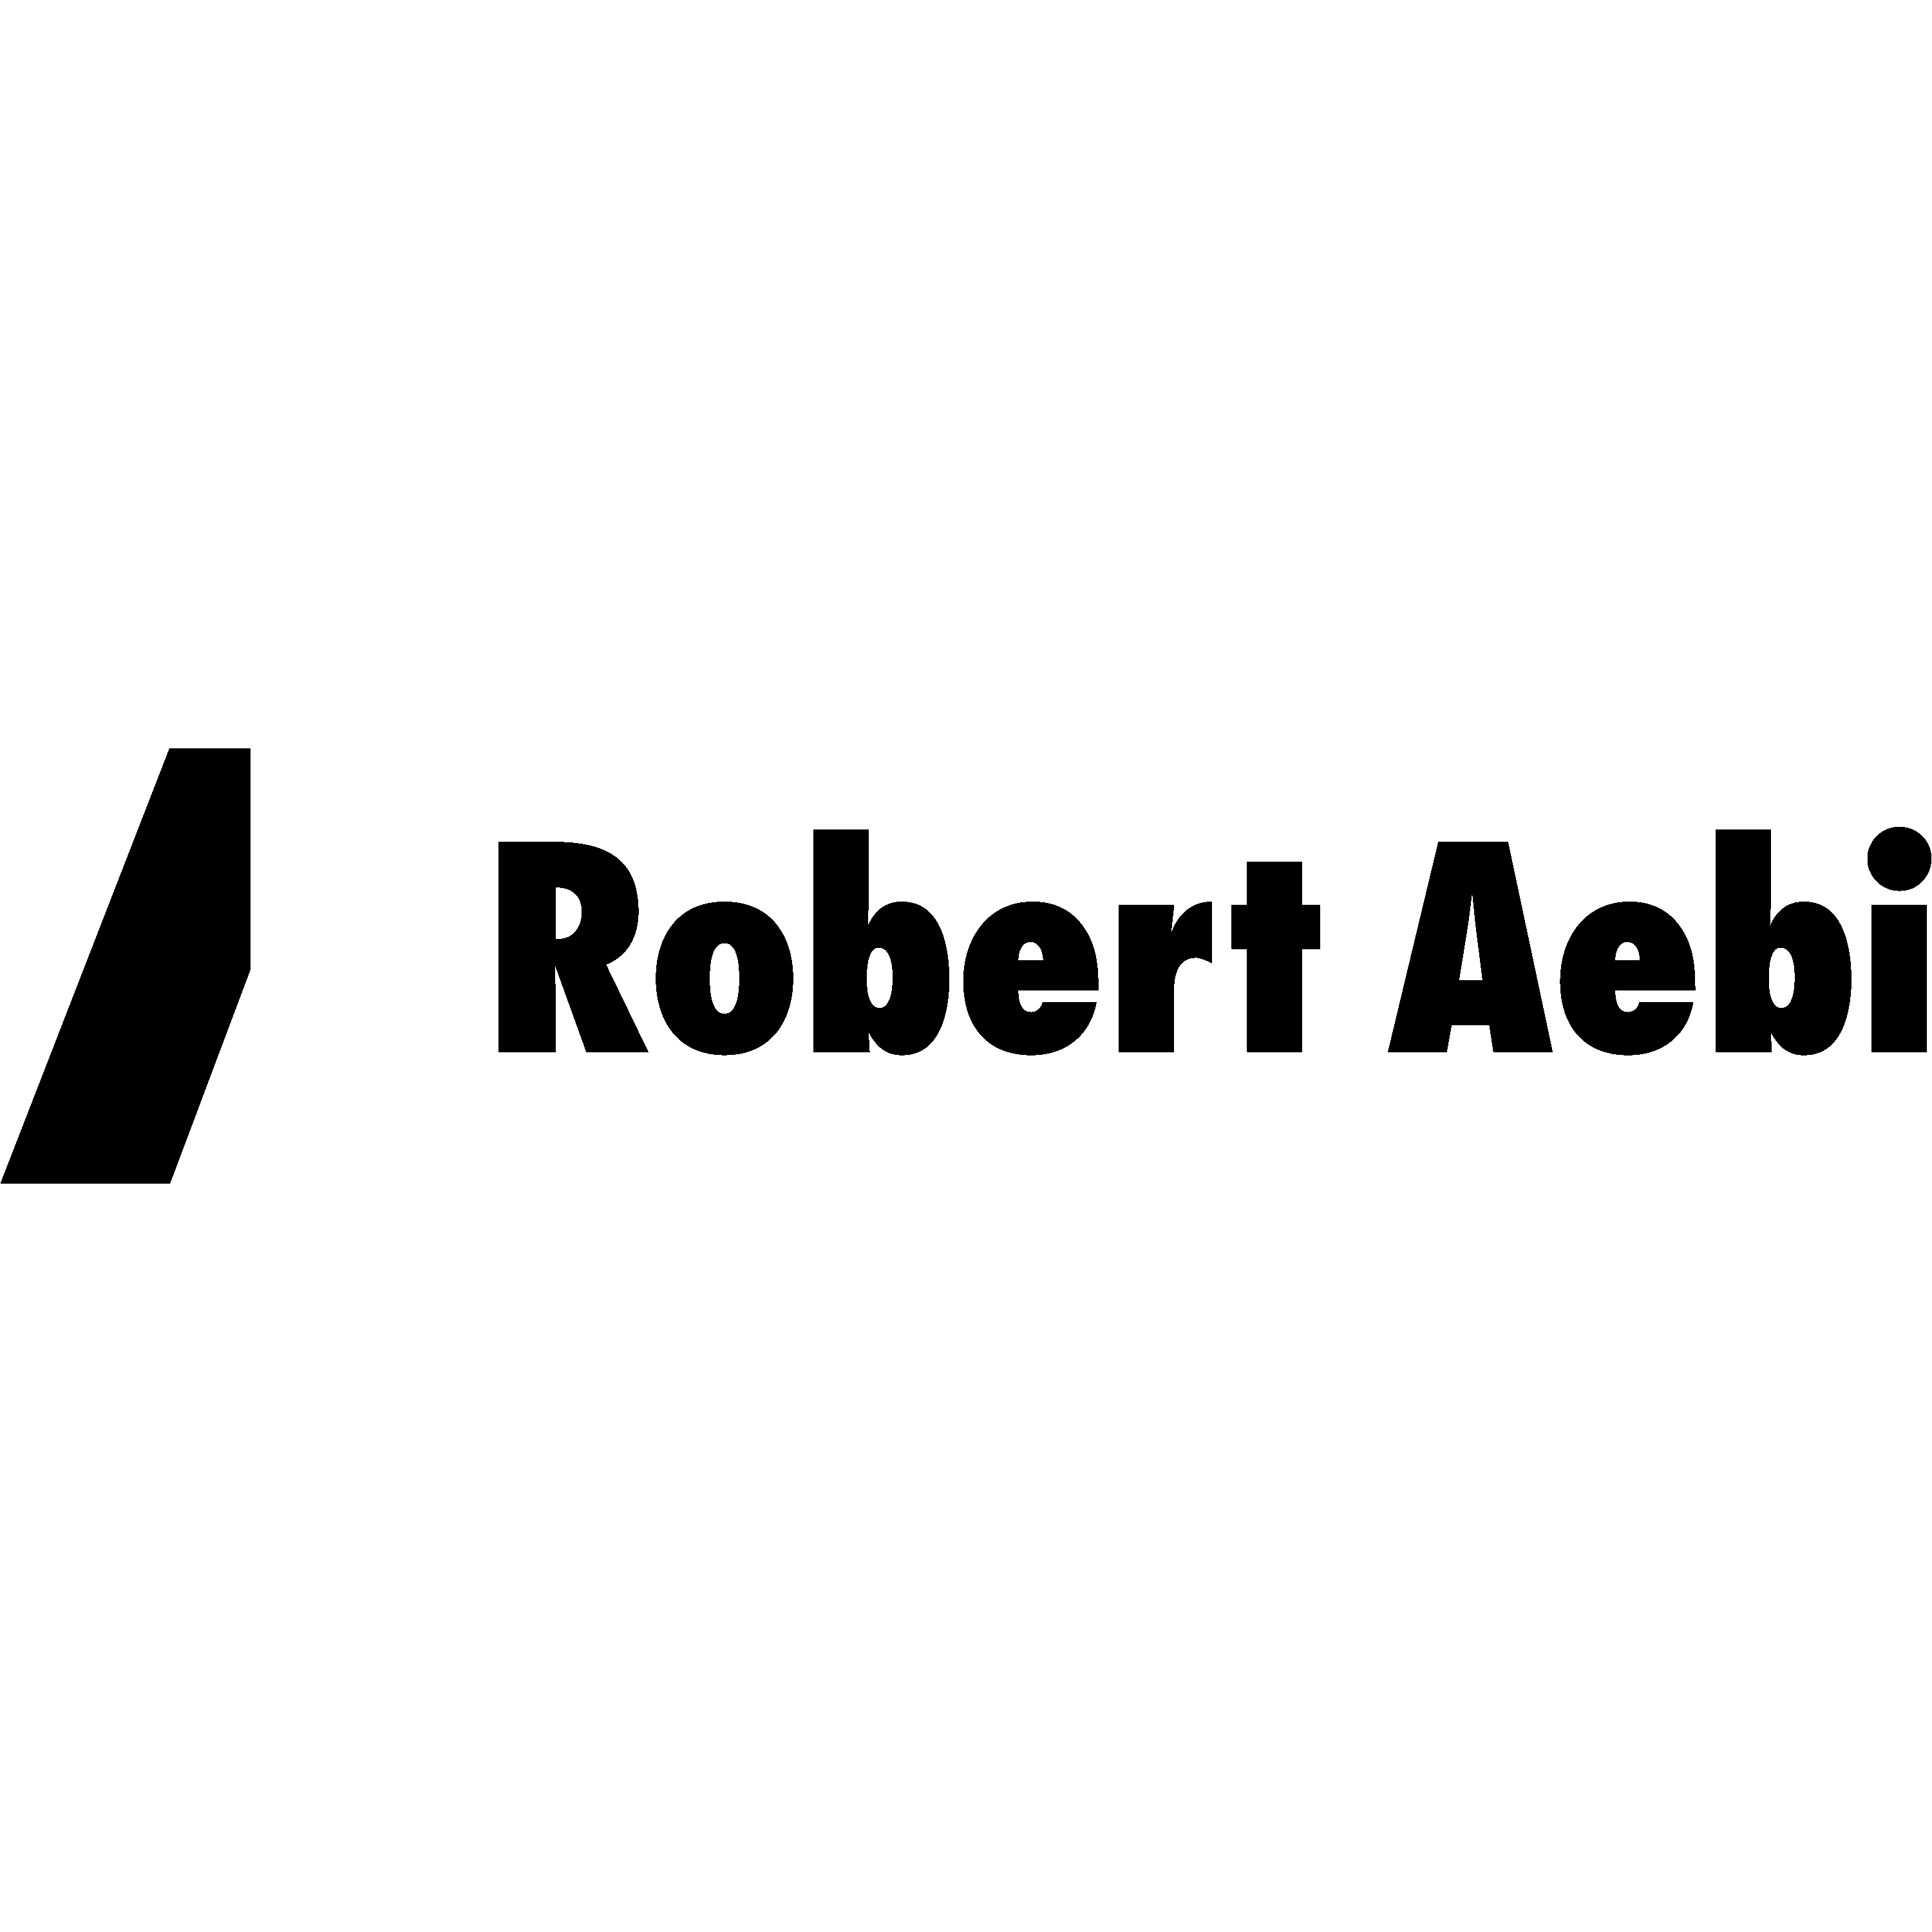 Rober Aebi Logo Transparent Picture